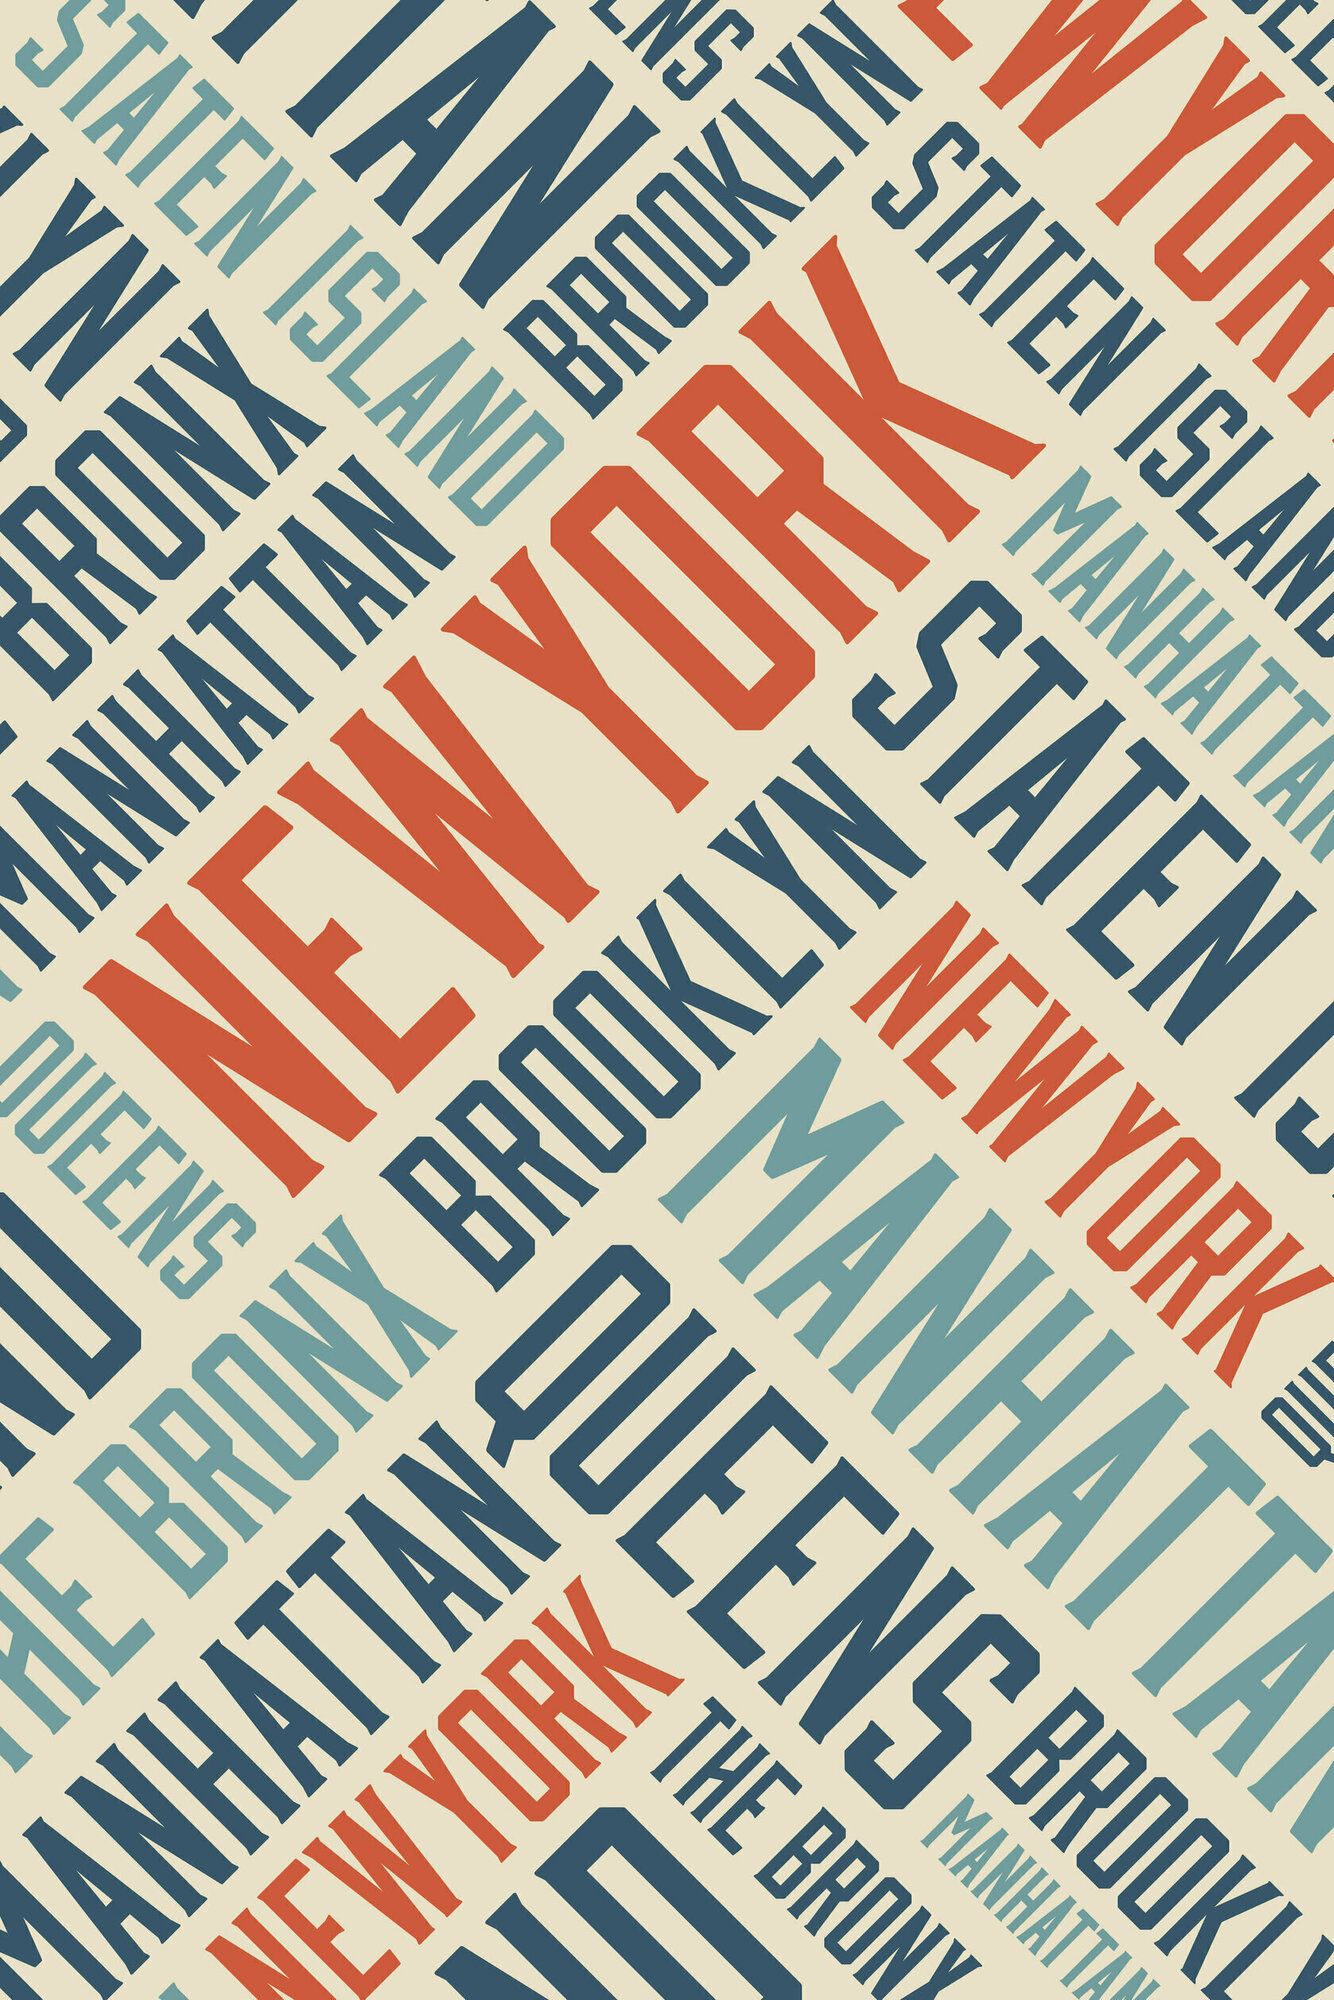 Плакат постер на бумаге Районы Нью-Йорка. Размер 21 х 30 см